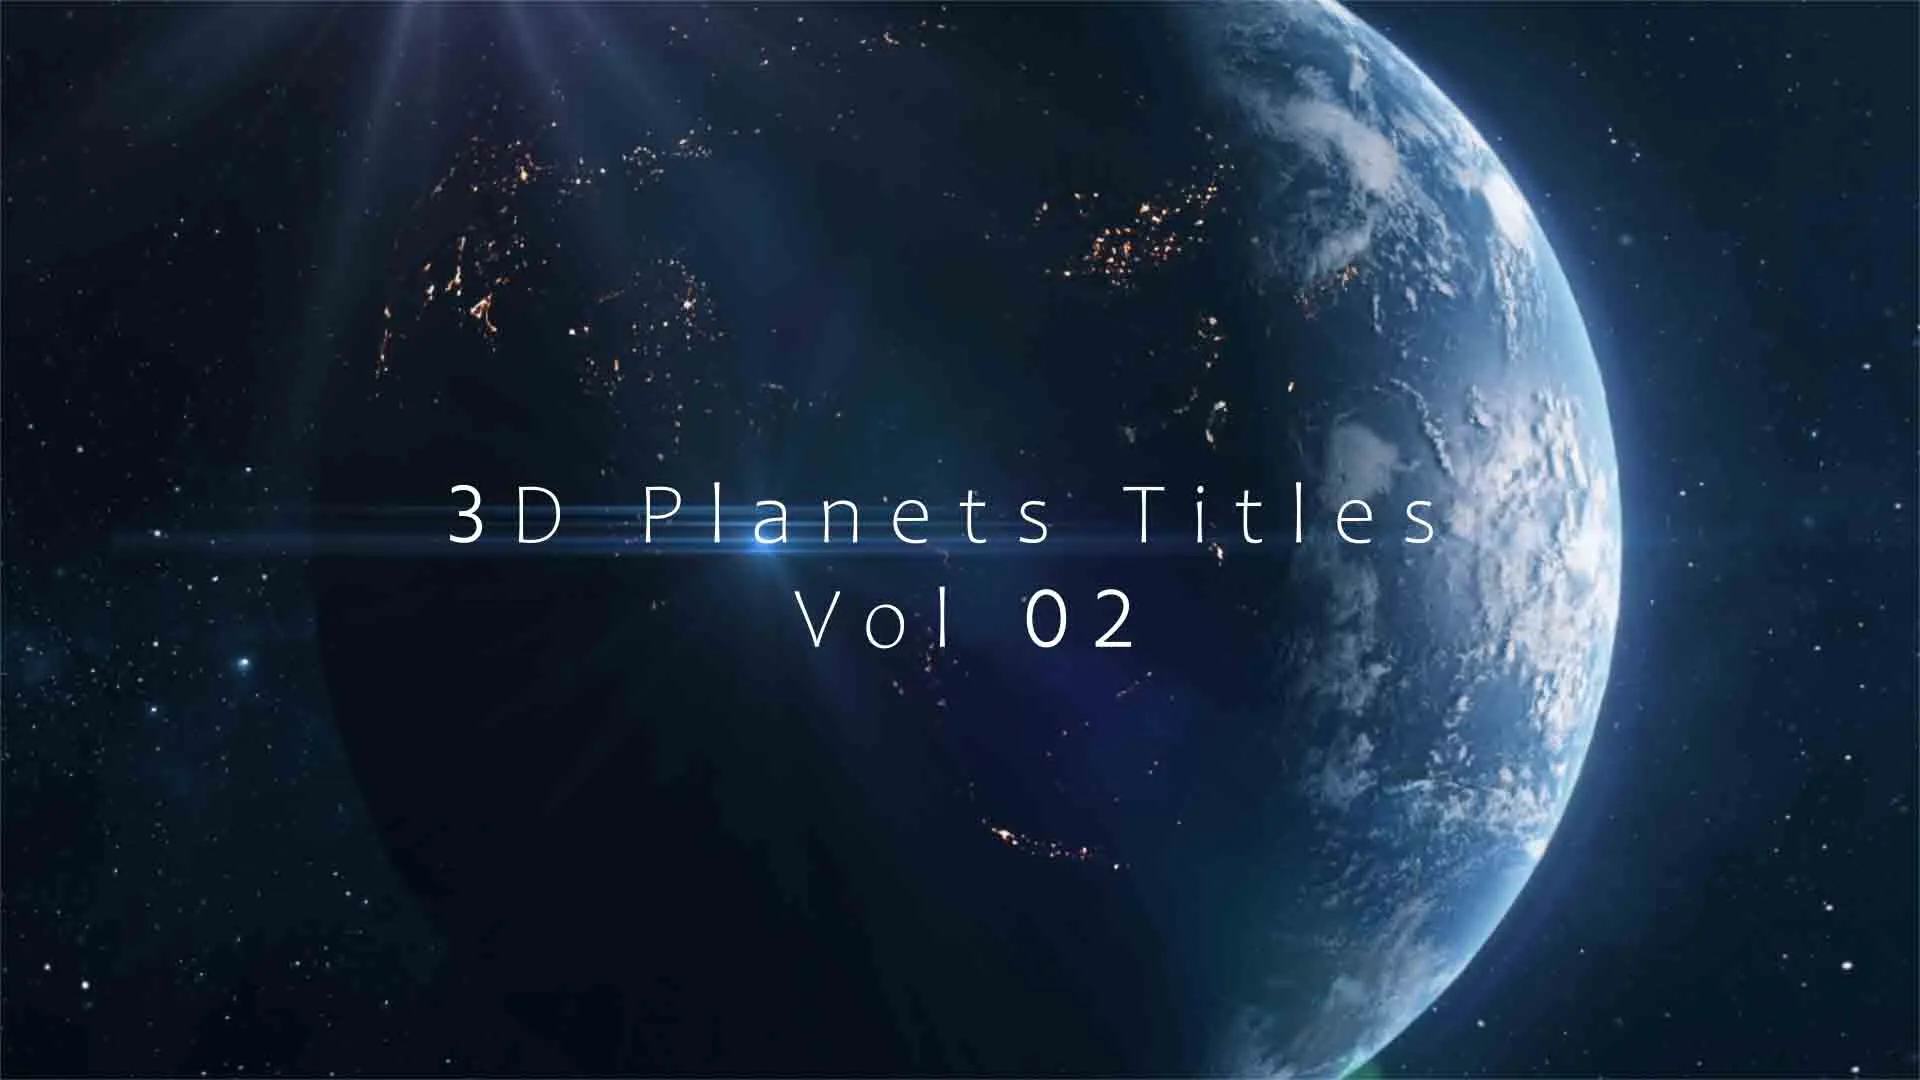 3D Planets Titles Vol 02